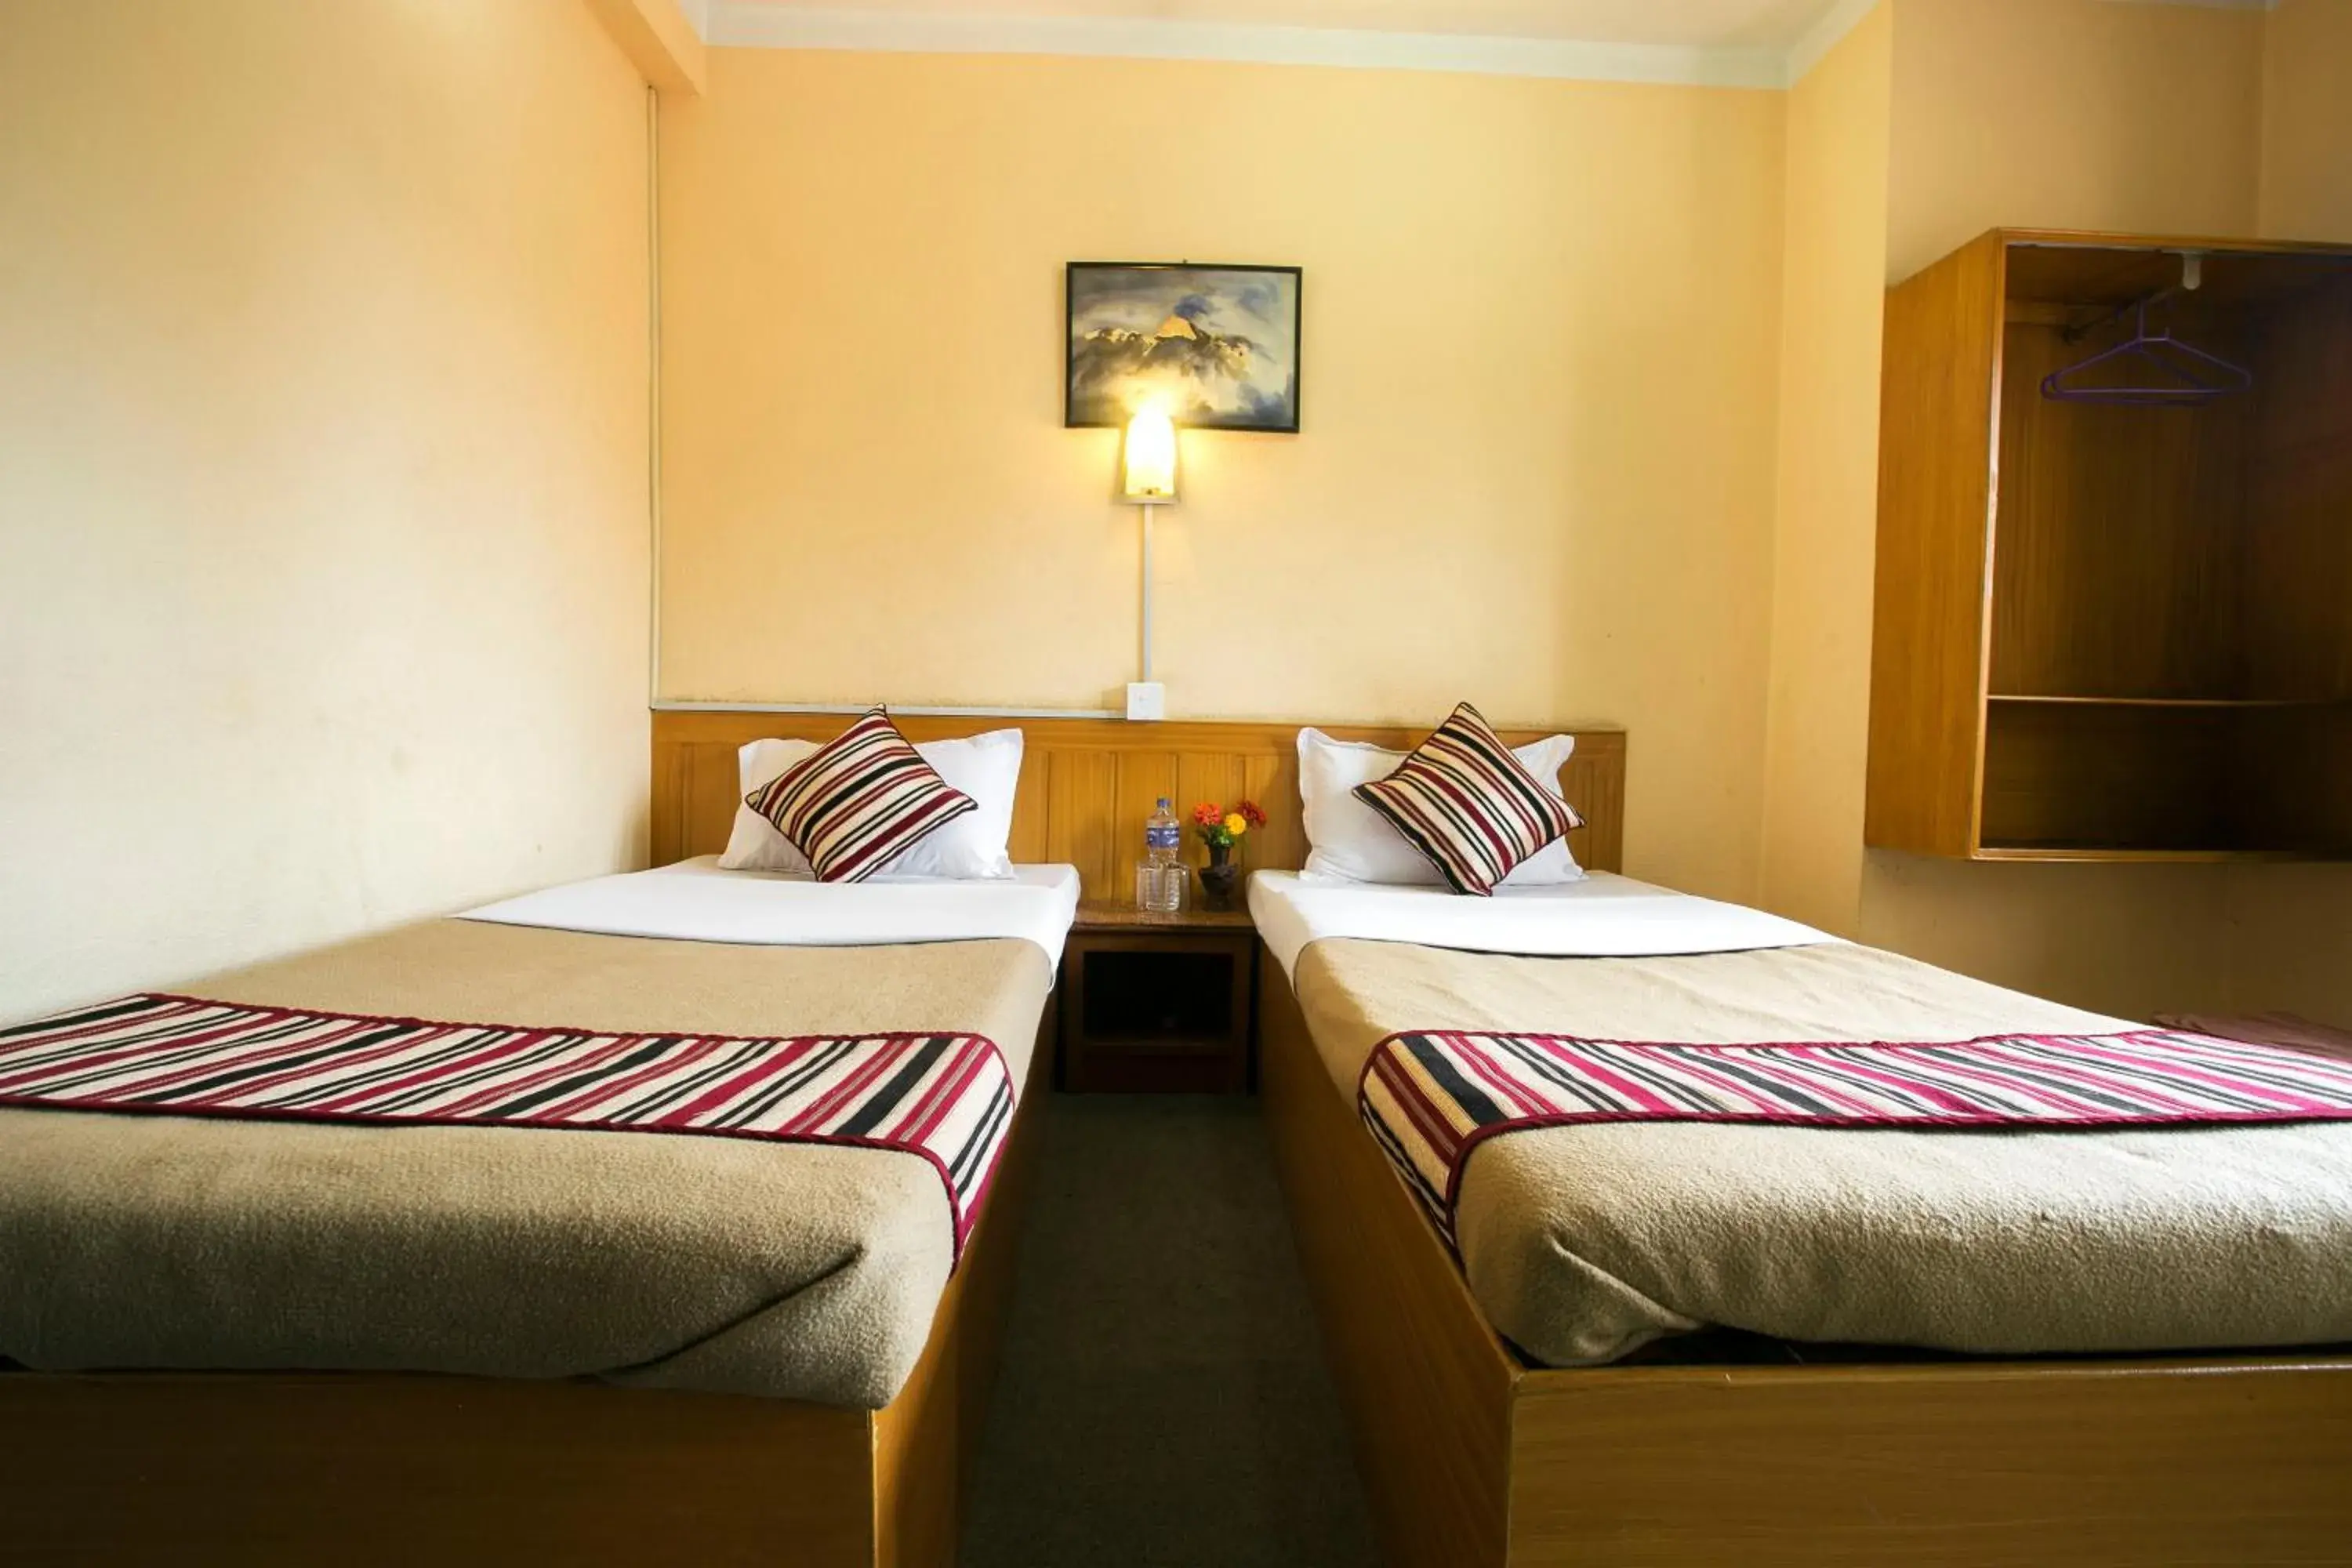 Bedroom, Room Photo in Hotel Nana